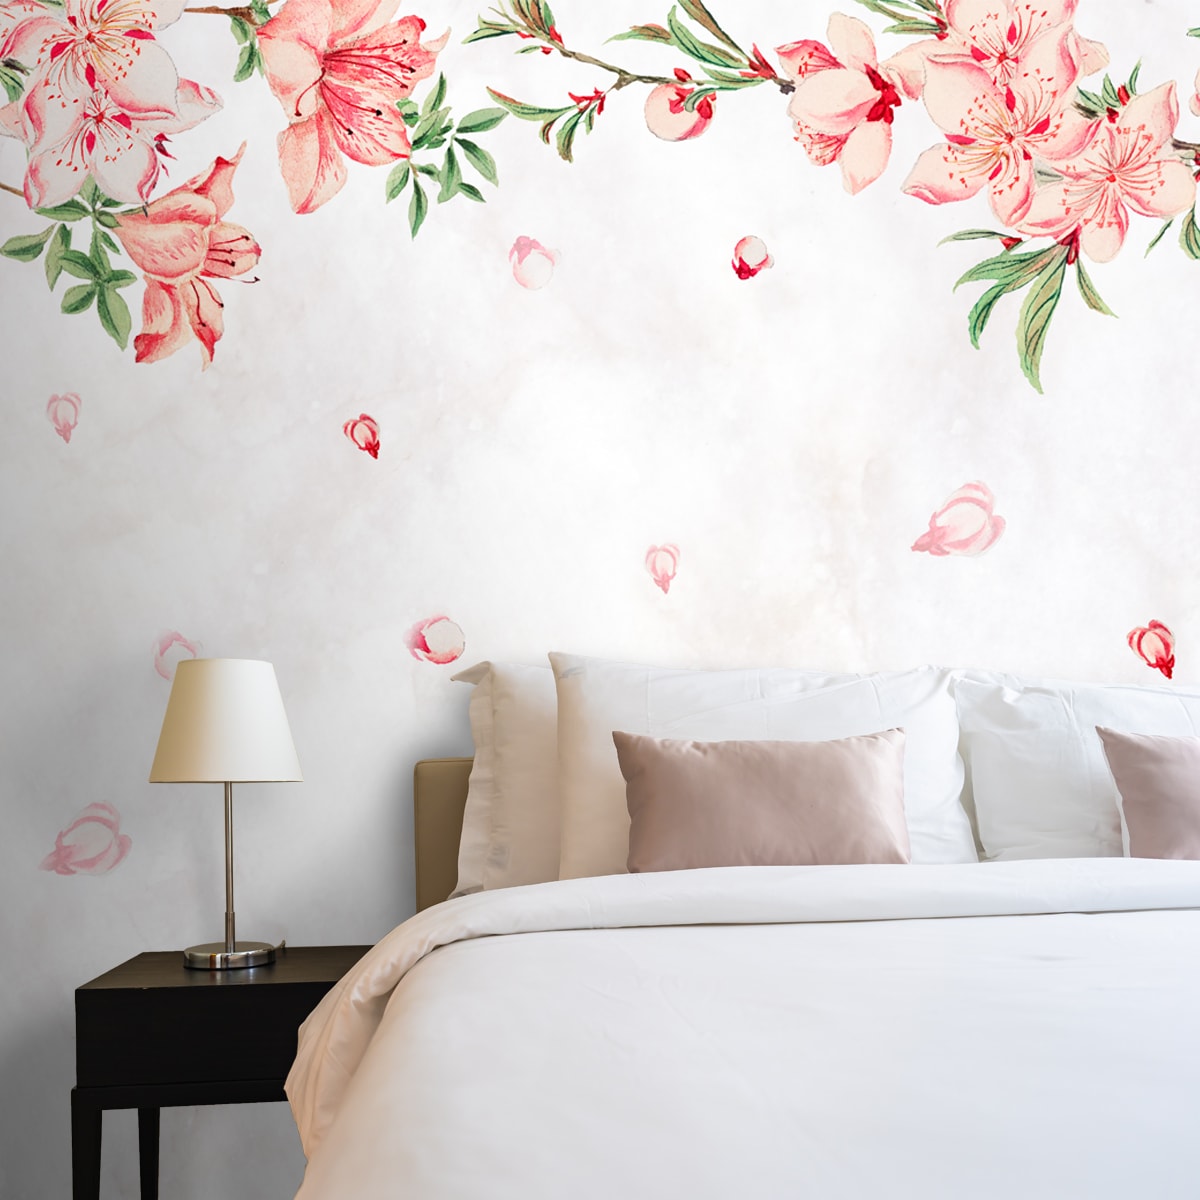 Hanging Floral Pattern Wallpaper Design for Bedrooms